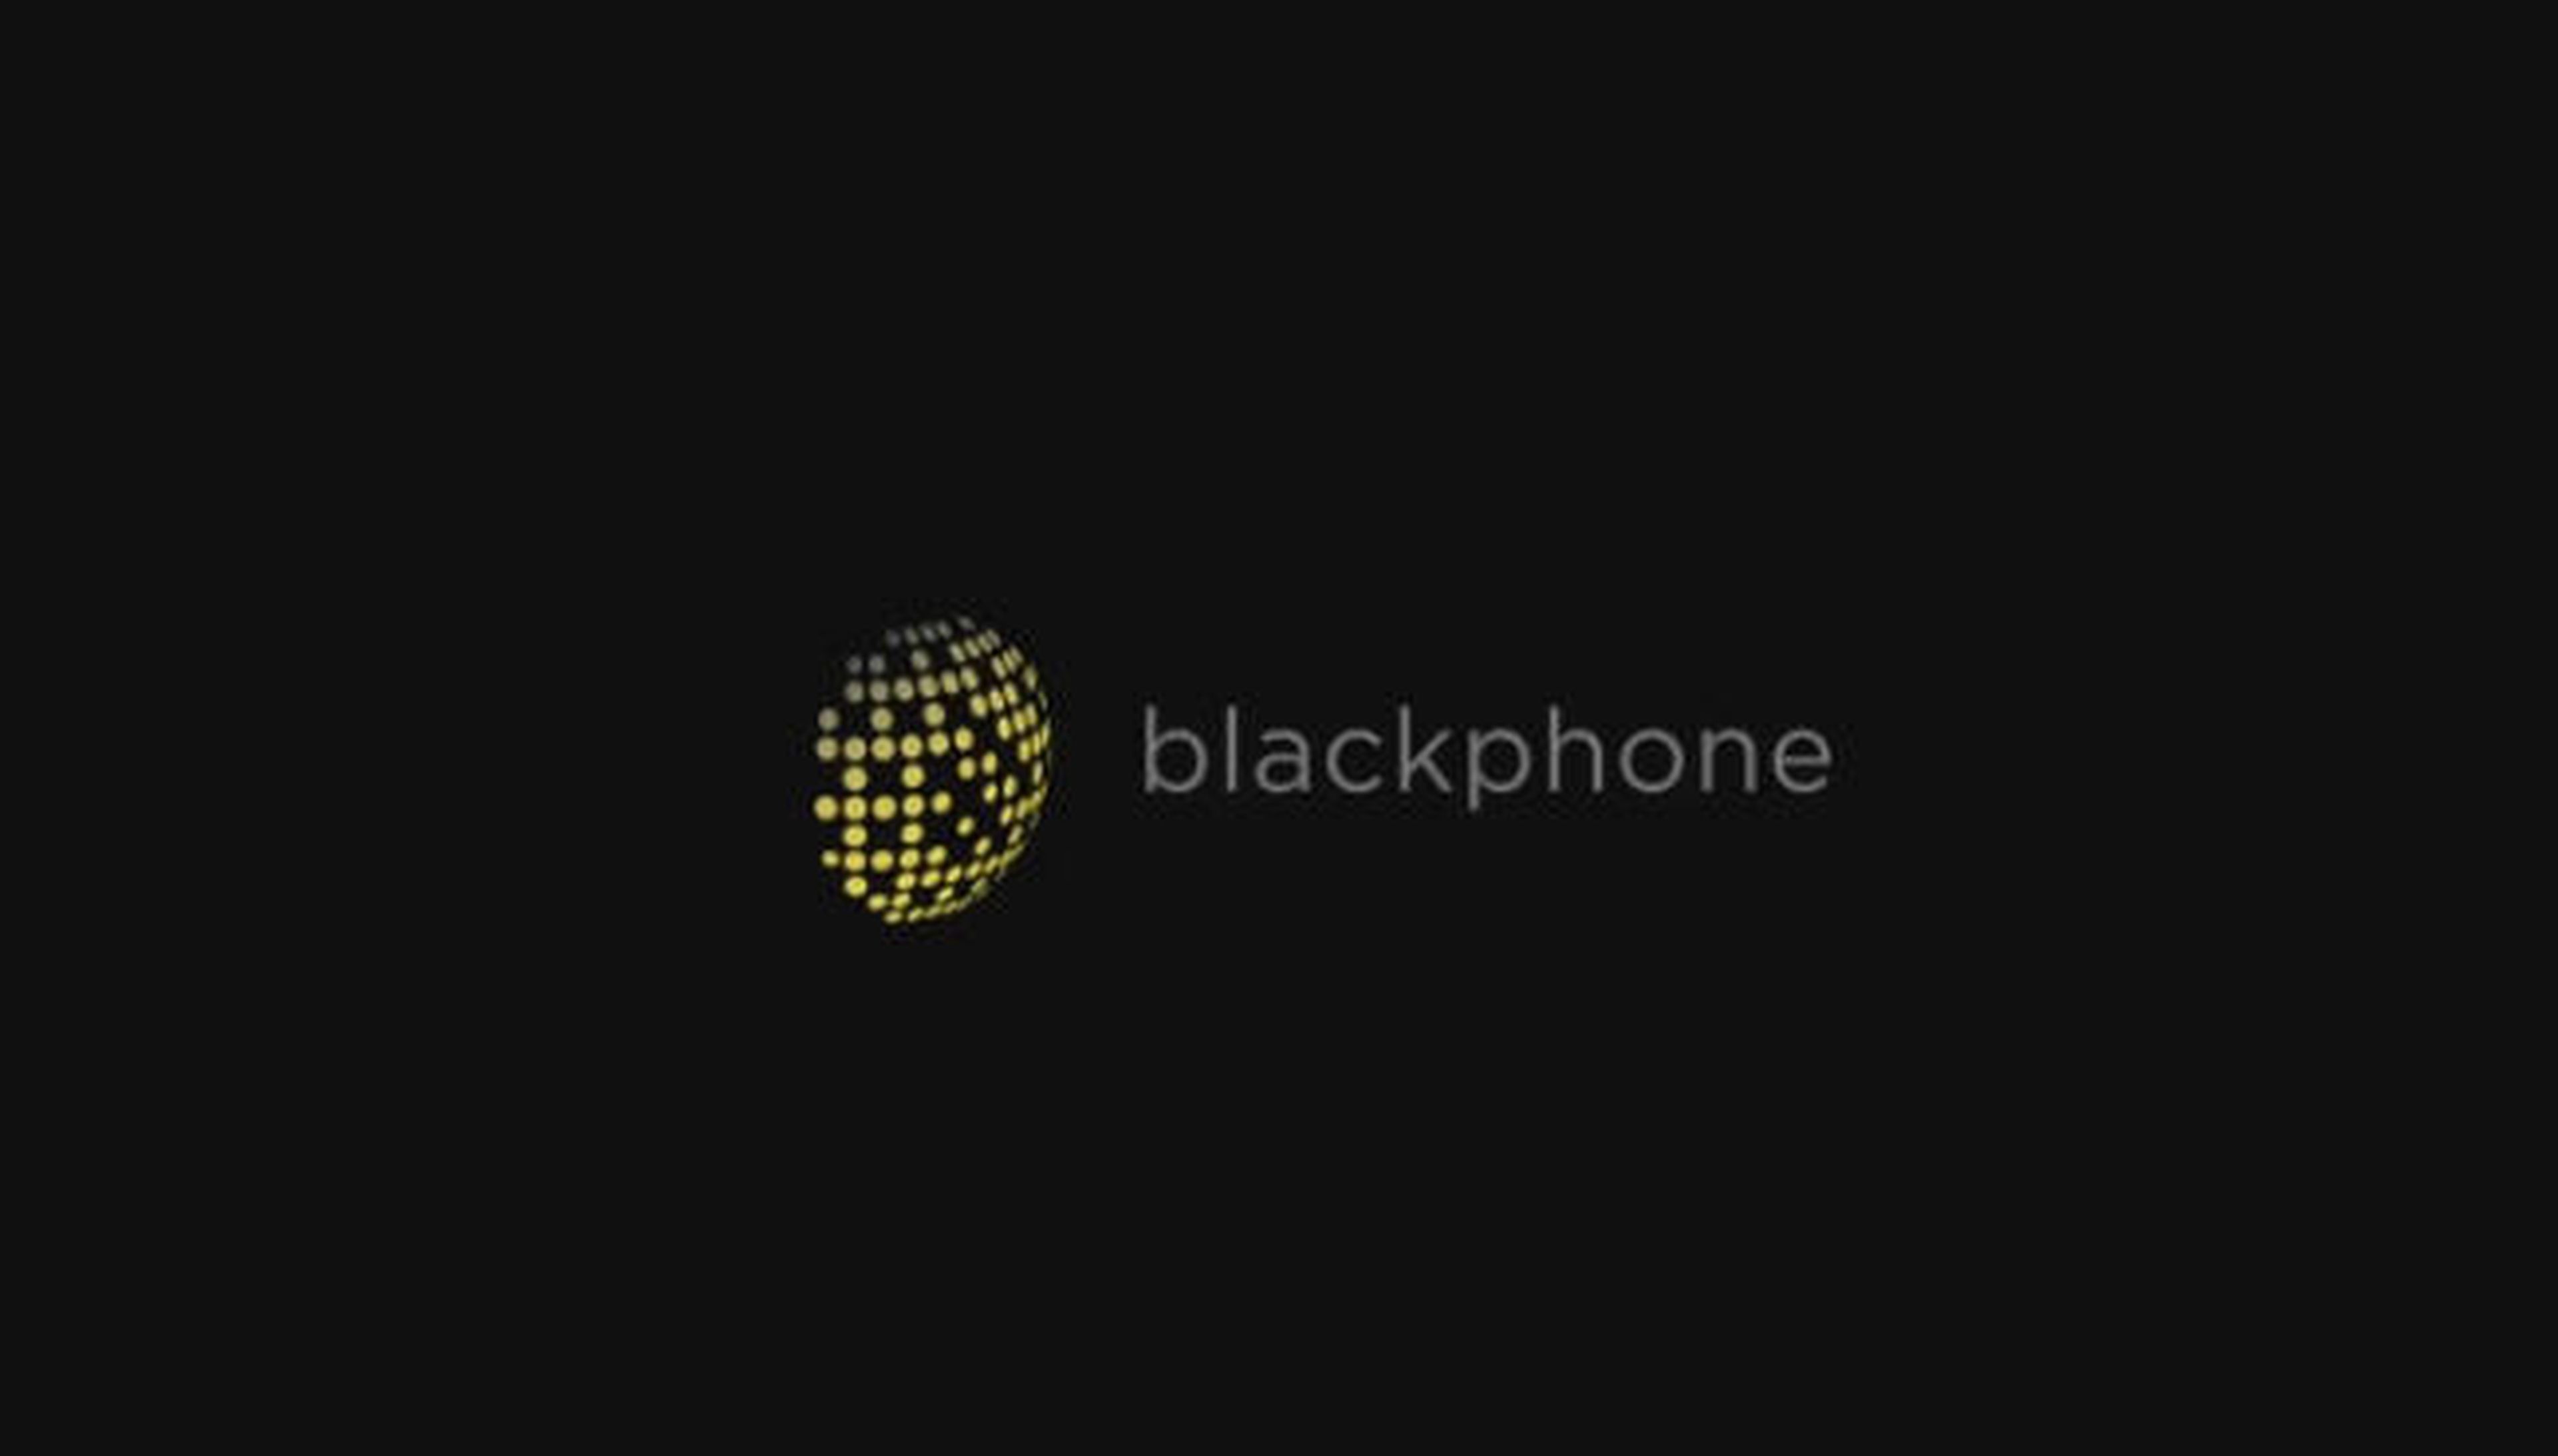 Blackphone MWC 2014 seguridad privacidad